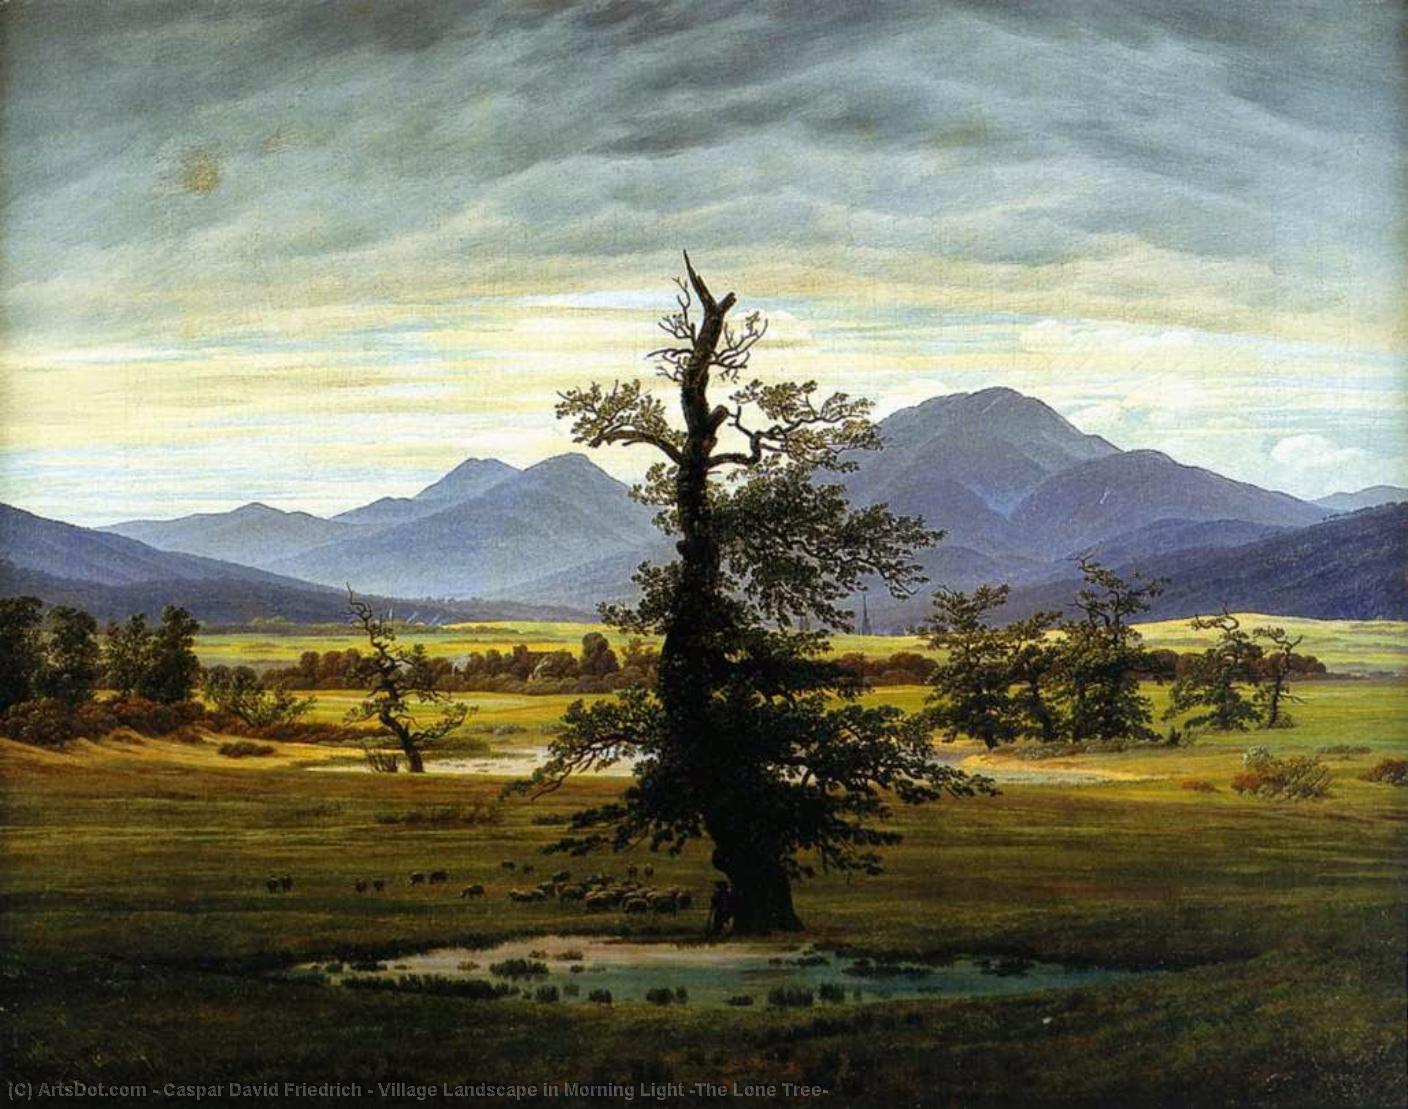 WikiOO.org – 美術百科全書 - 繪畫，作品 Caspar David Friedrich - 村景观 在  上午  光  的  孤单  树